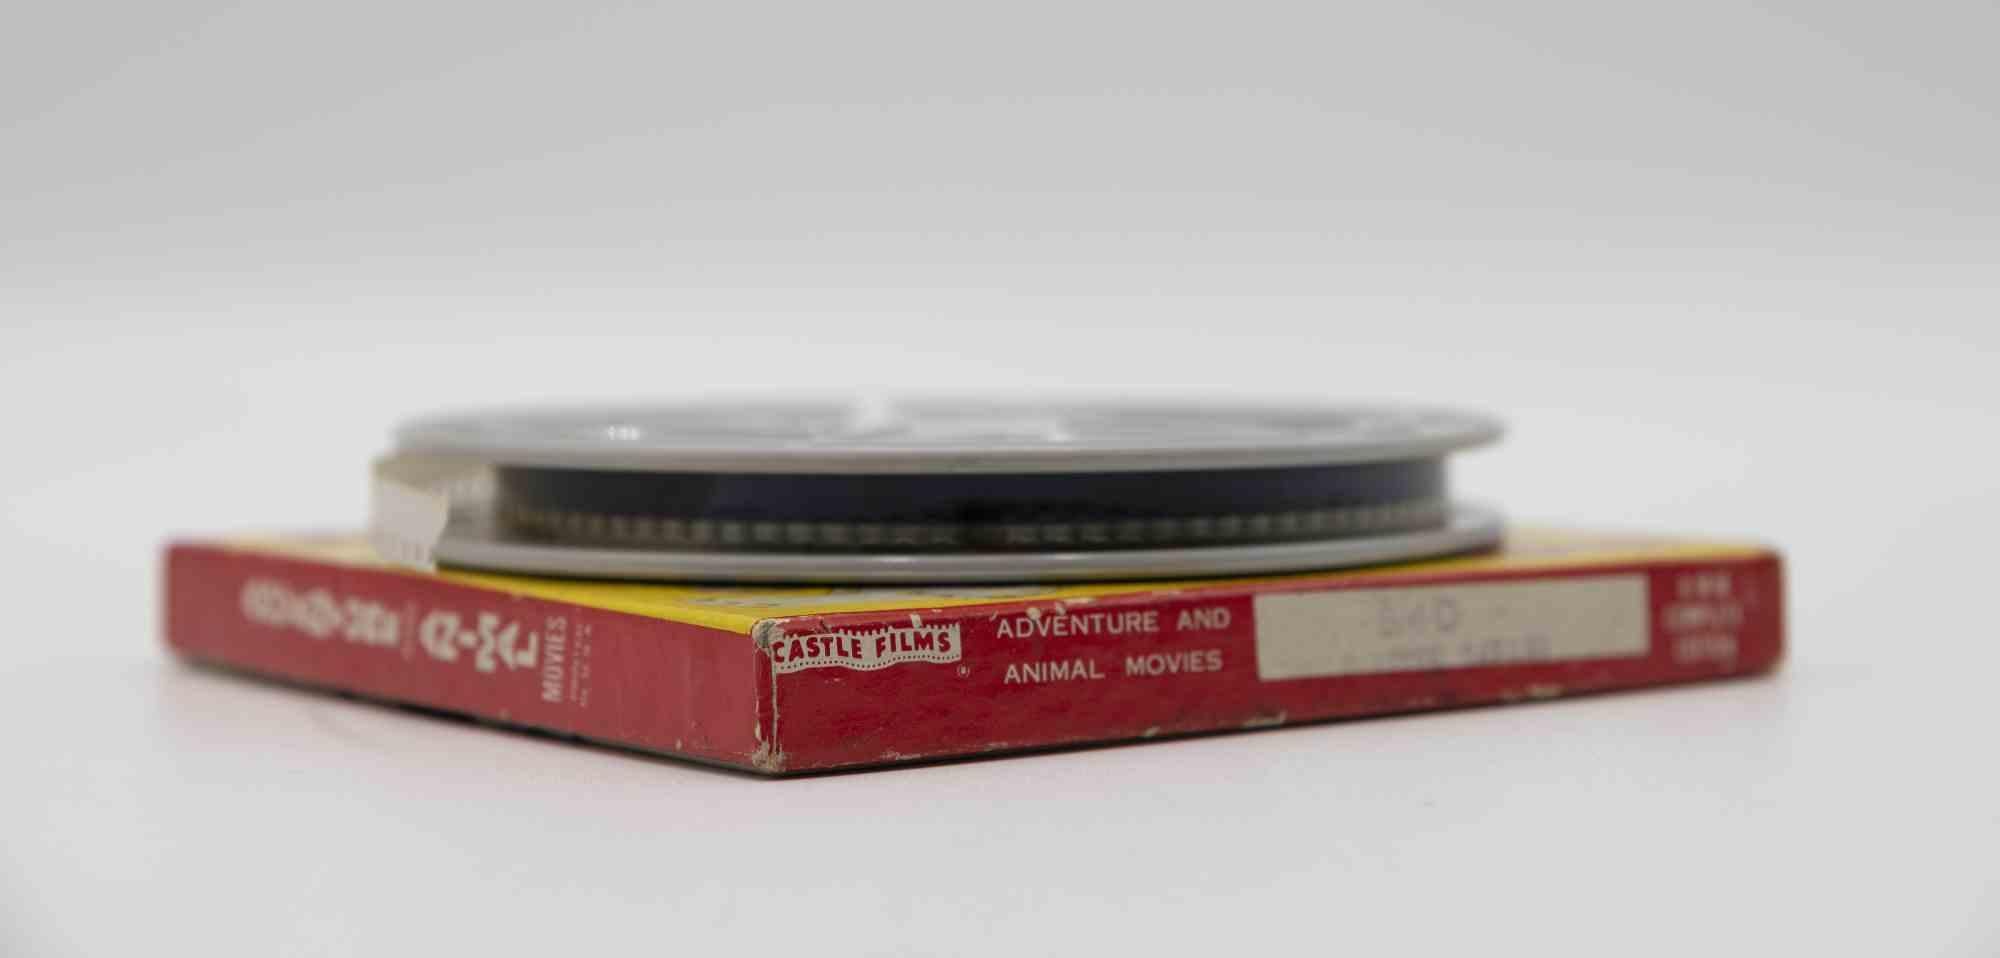 Wildflusssafari ist ein Originalfilm aus den 1940er Jahren.

Sie enthält die Originalverpackung.

8mm oder 16mm.

Gute Bedingungen